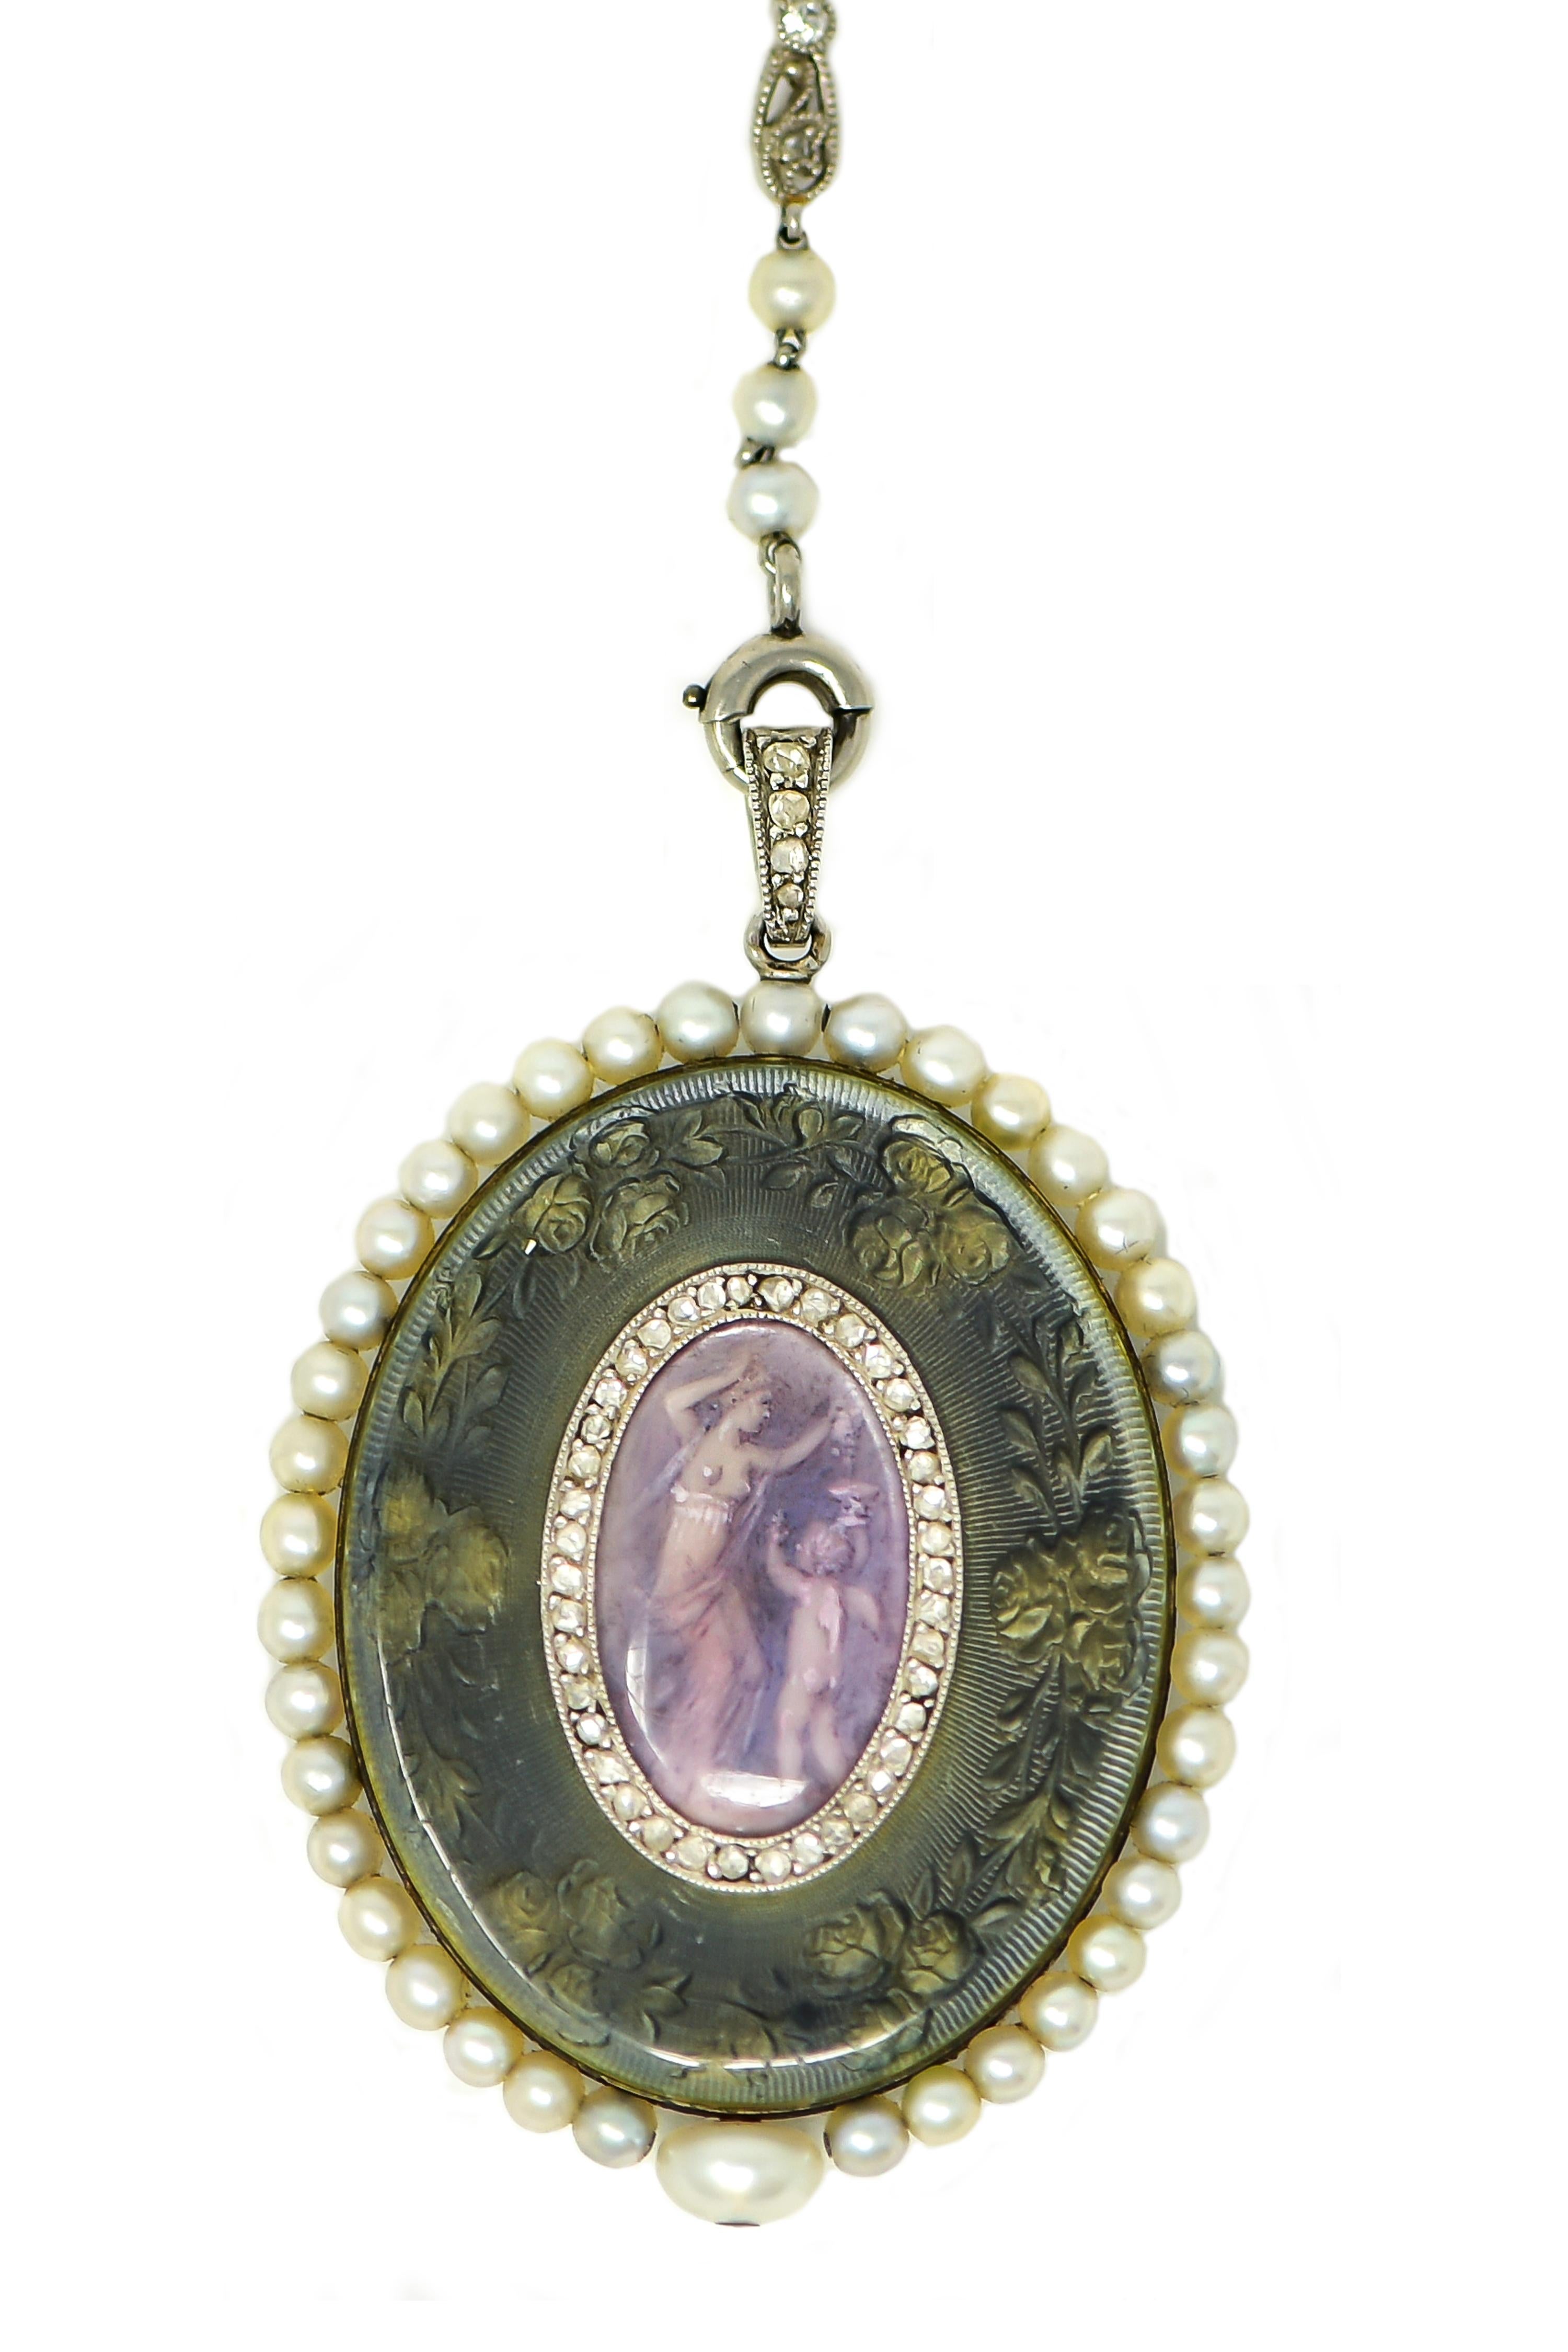 Verger Freres Paillet Platinum Diamond Enamel Pearl Necklace Pendant Watch, 1900 For Sale 10